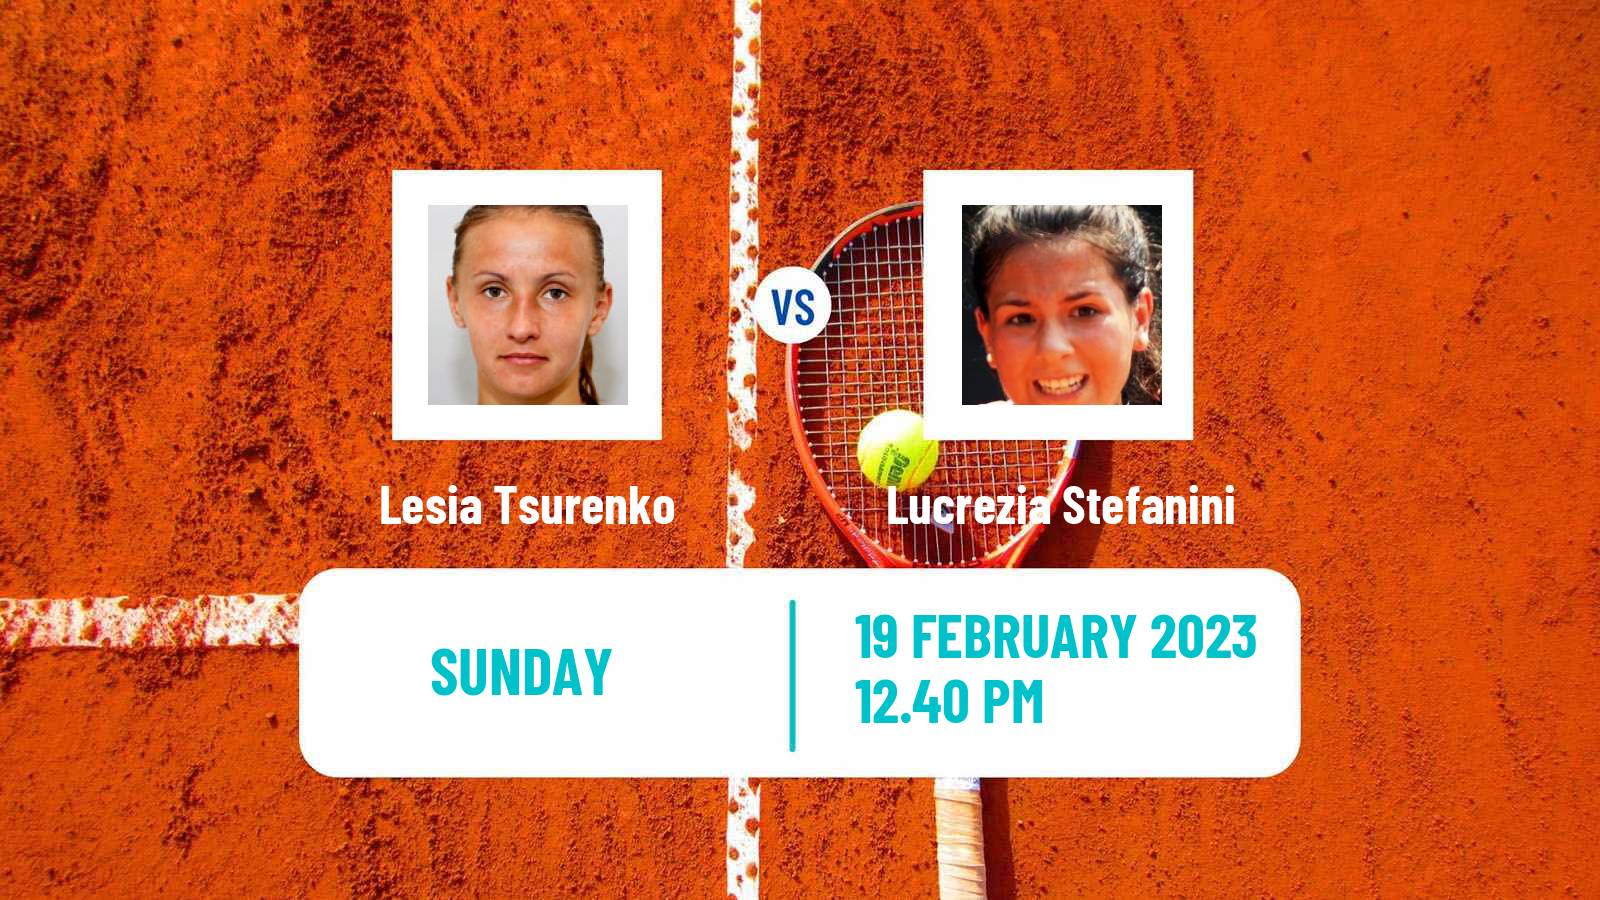 Tennis WTA Merida Lesia Tsurenko - Lucrezia Stefanini